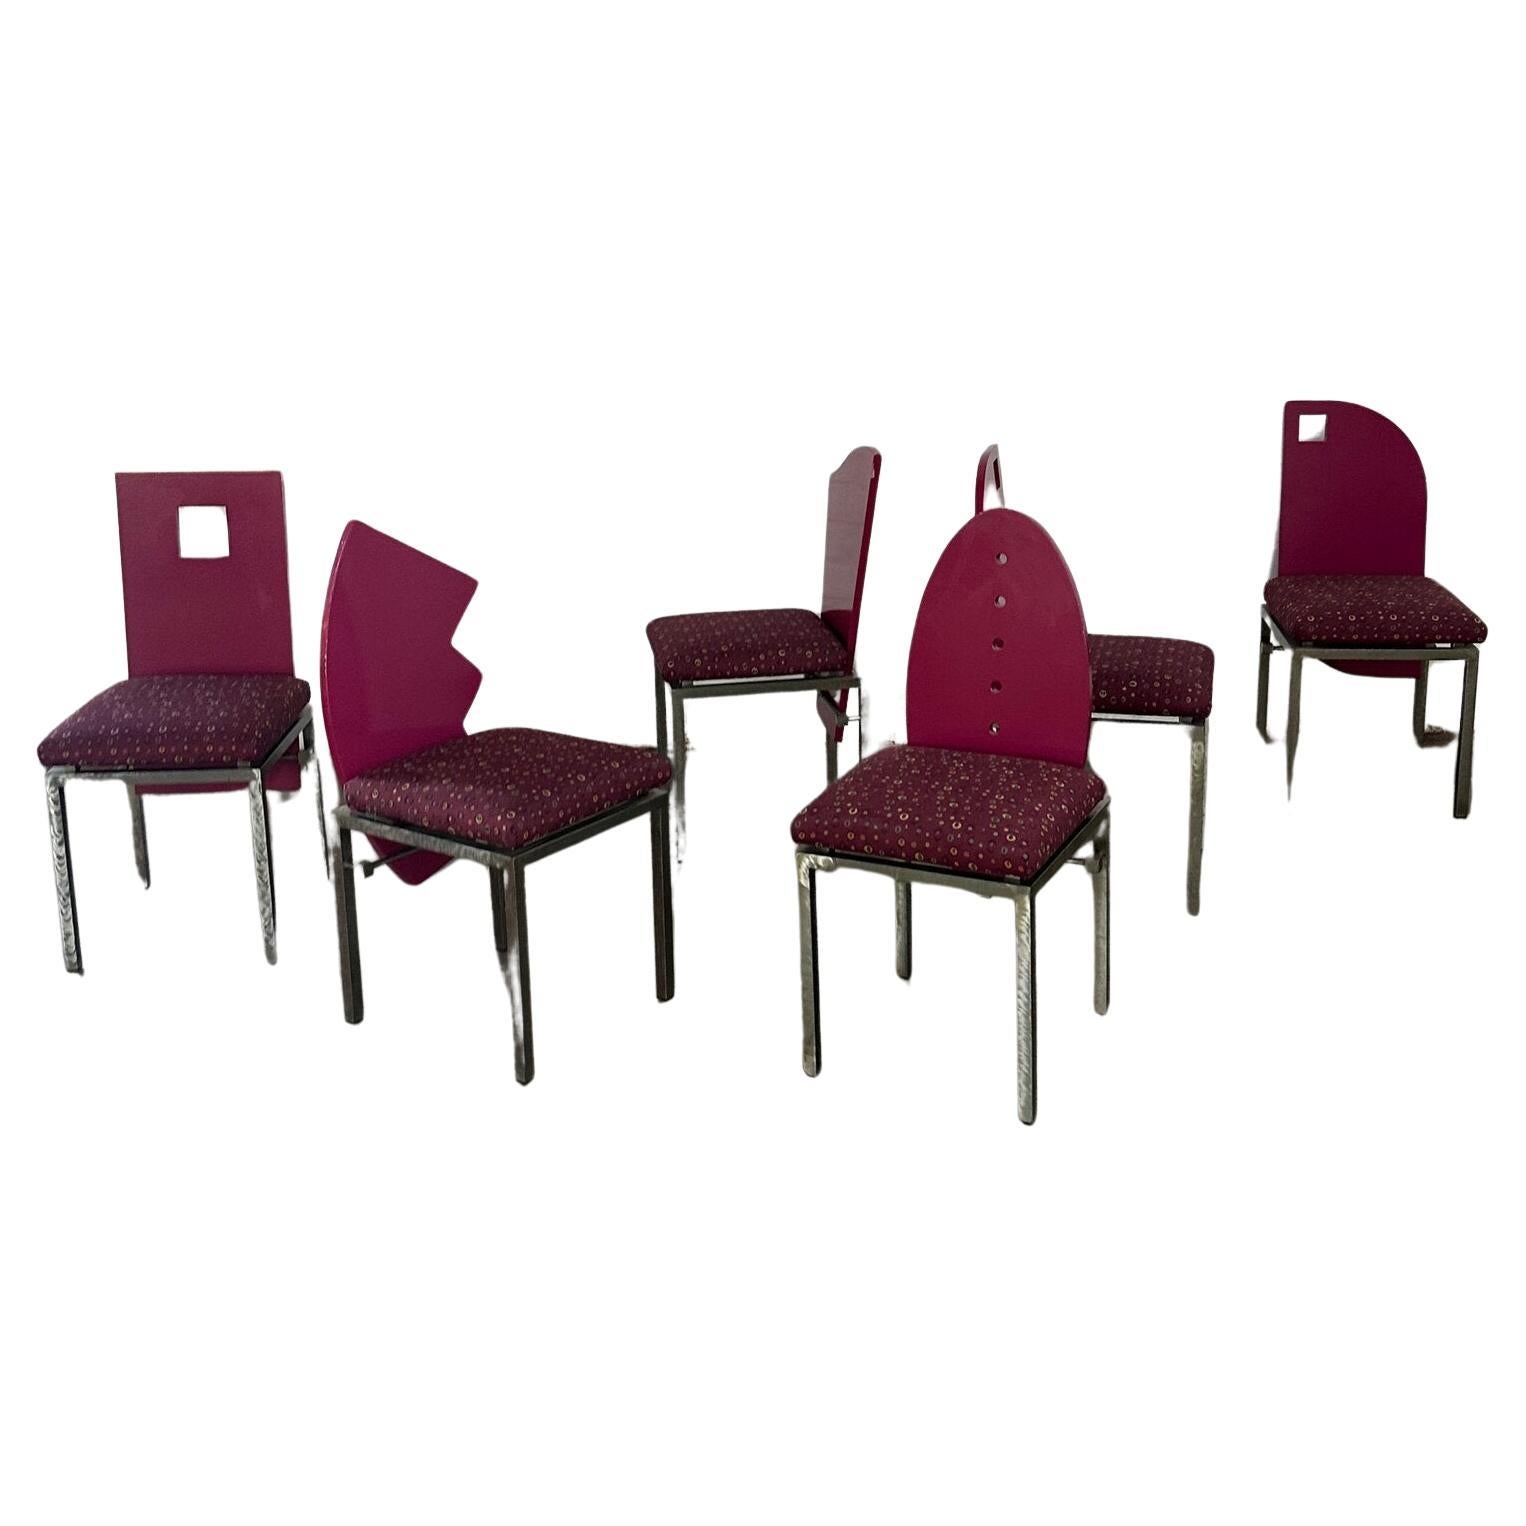 Saporiti Style Post Modern Chairs- Set of Six